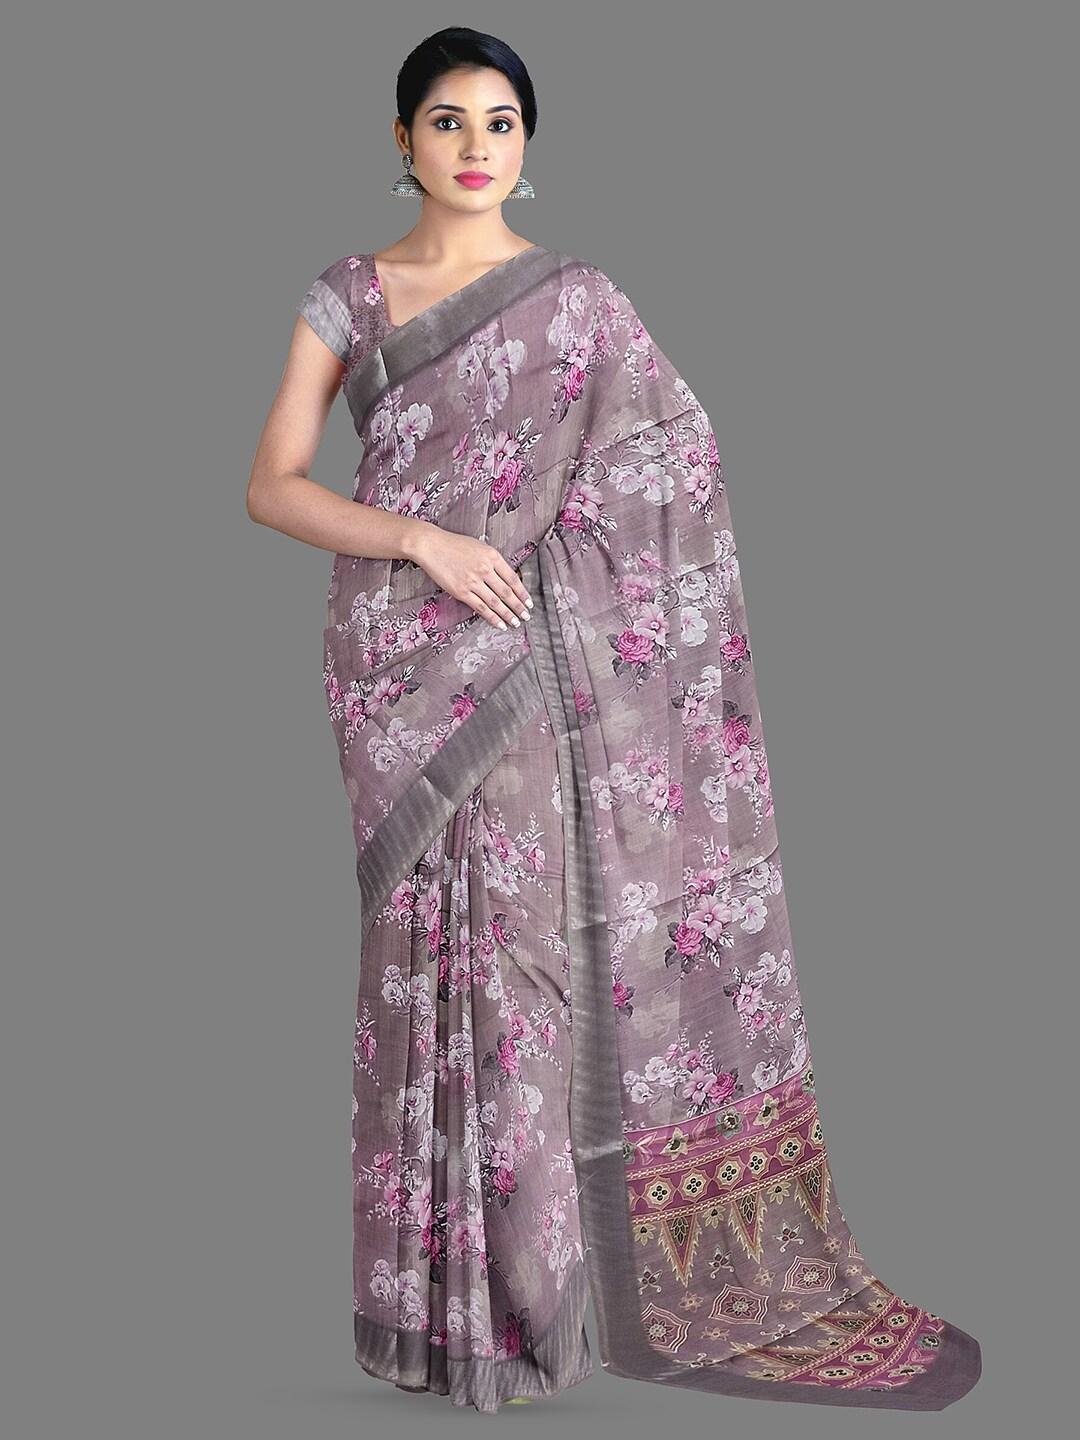 The Chennai Silks Floral Printed Saree